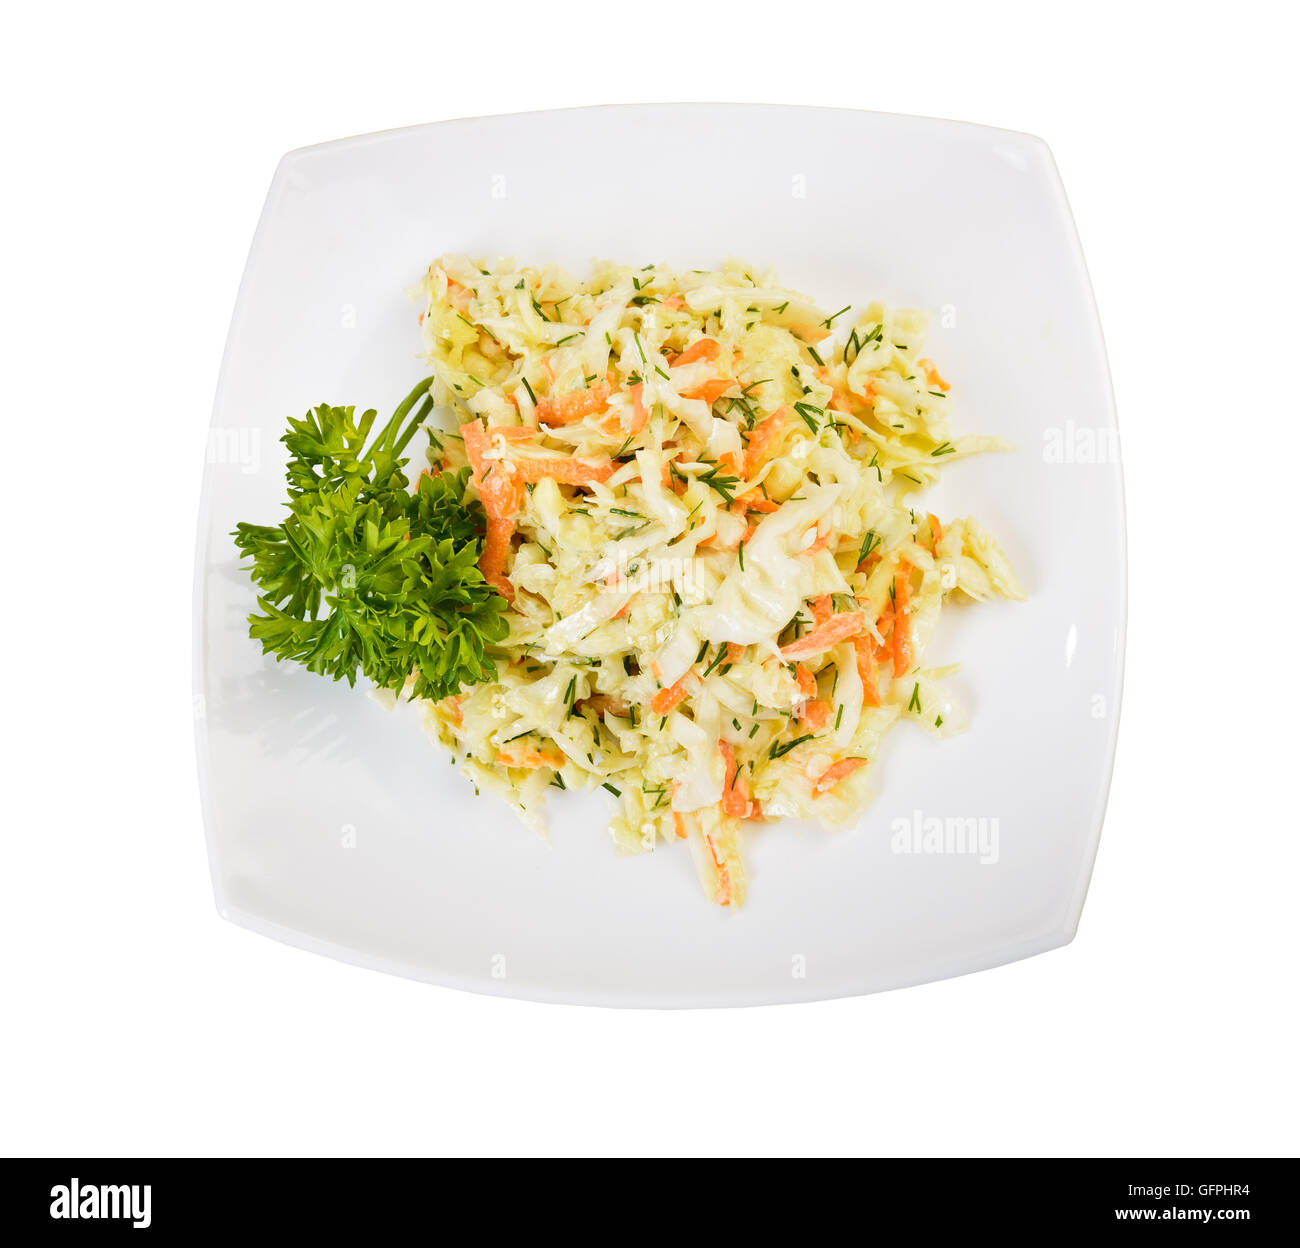 Plato de ensalada de repollo y zanahoria (coleslaw) Vista desde arriba sobre blanco Foto de stock